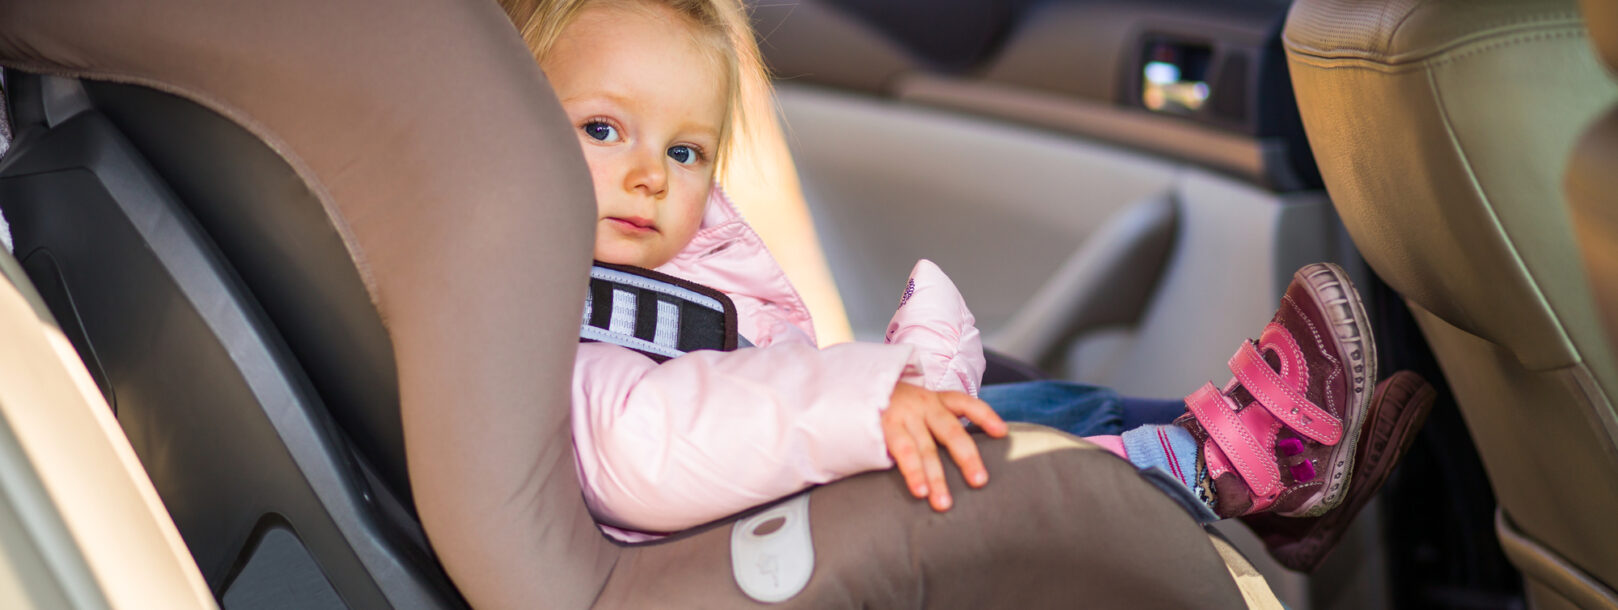 Hvor længe må baby sidde i autostol?